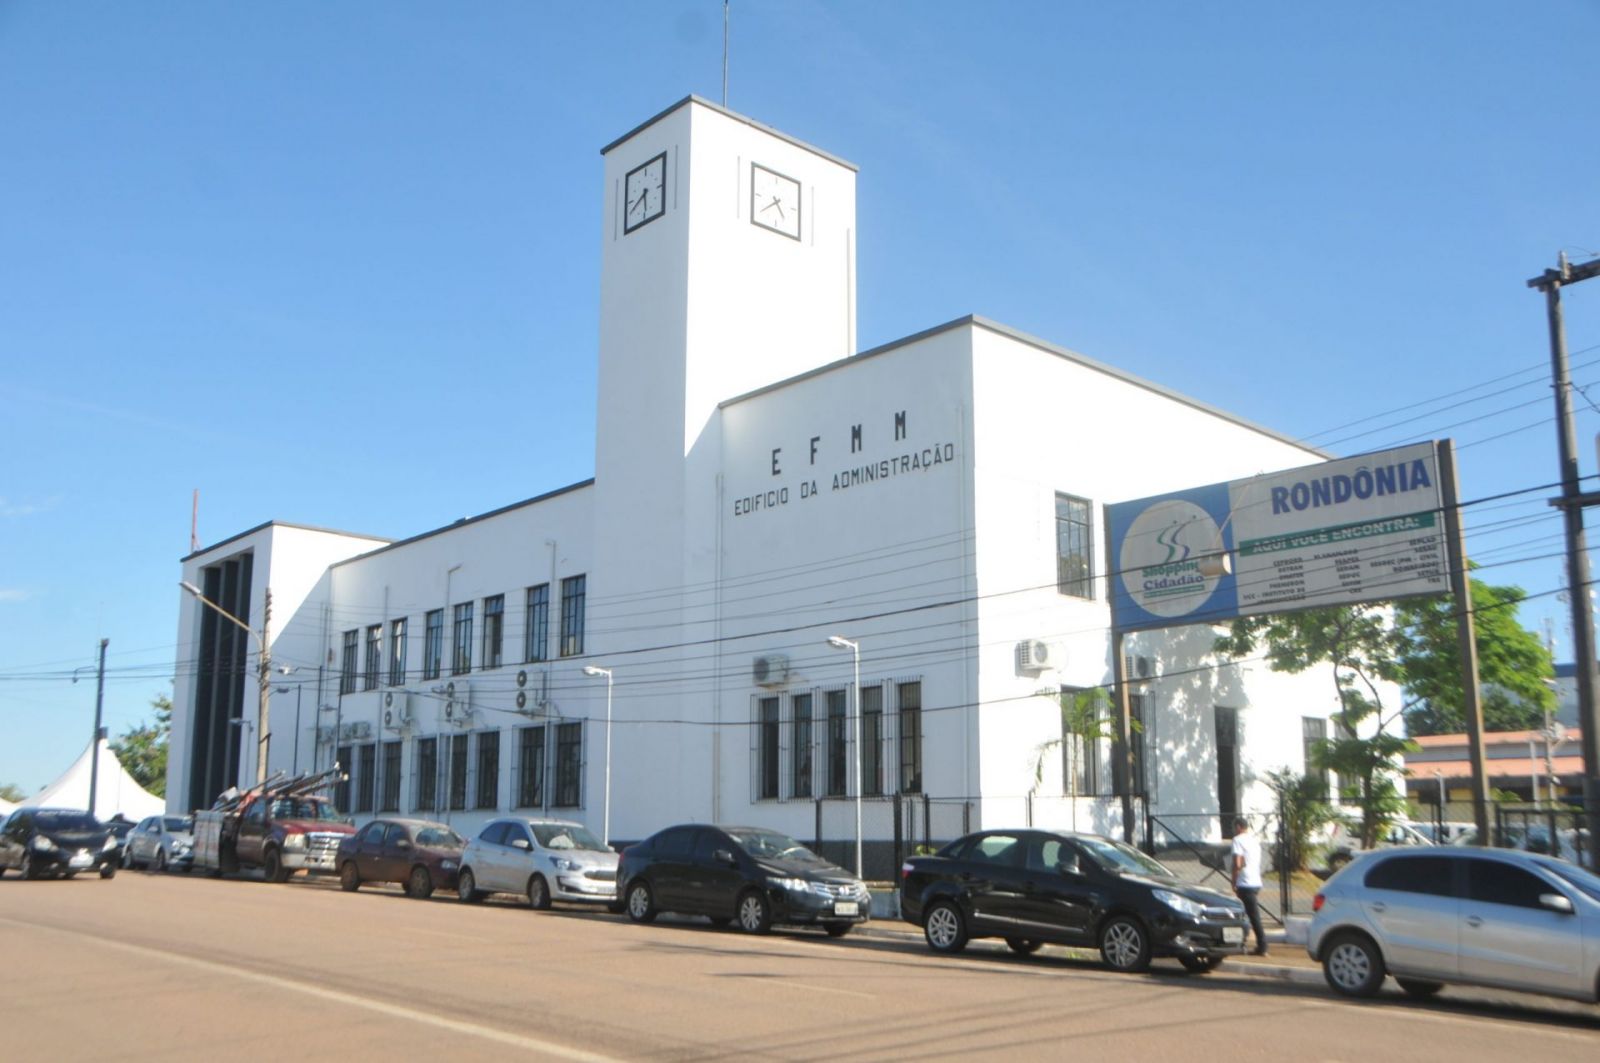 OPORTUNIDADE - Prefeitura cadastra interessados para leilão de bens que perderam utilidade - News Rondônia